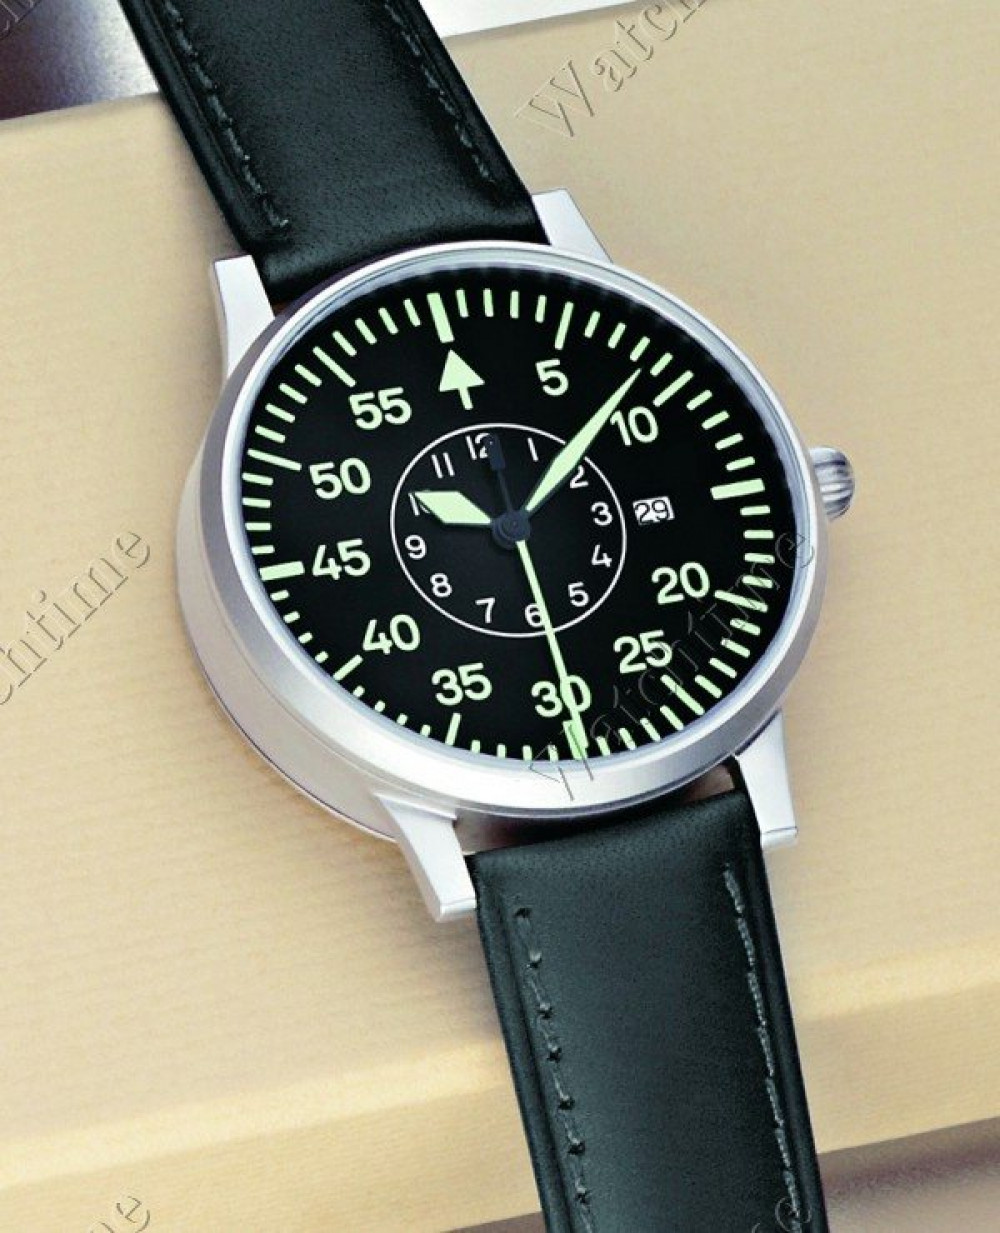 Zegarek firmy Laco, model 6580 Mechanische Fliegeruhr